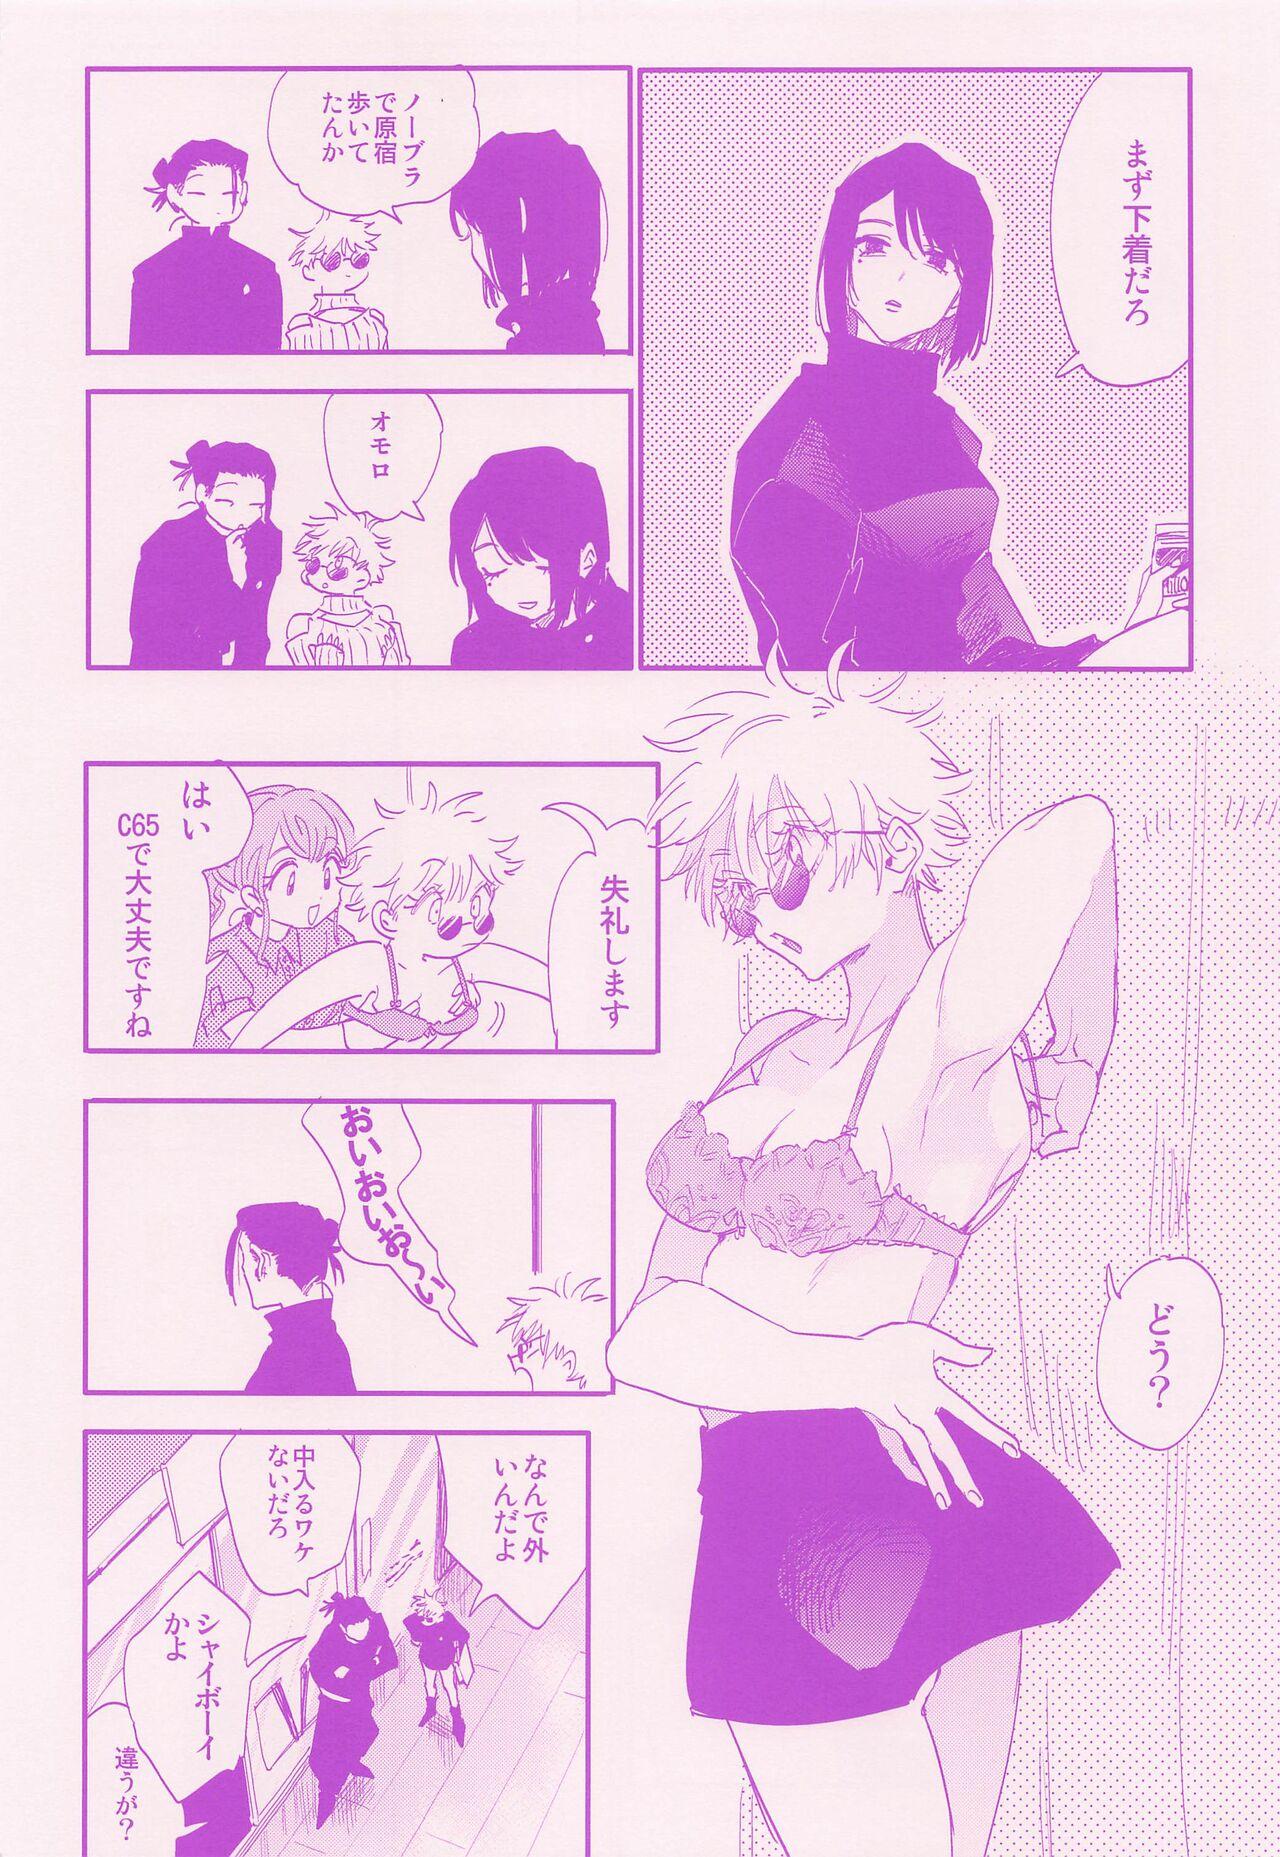 Big Pussy hadaihizuba／who are yo？ - Jujutsu kaisen Orgame - Page 6